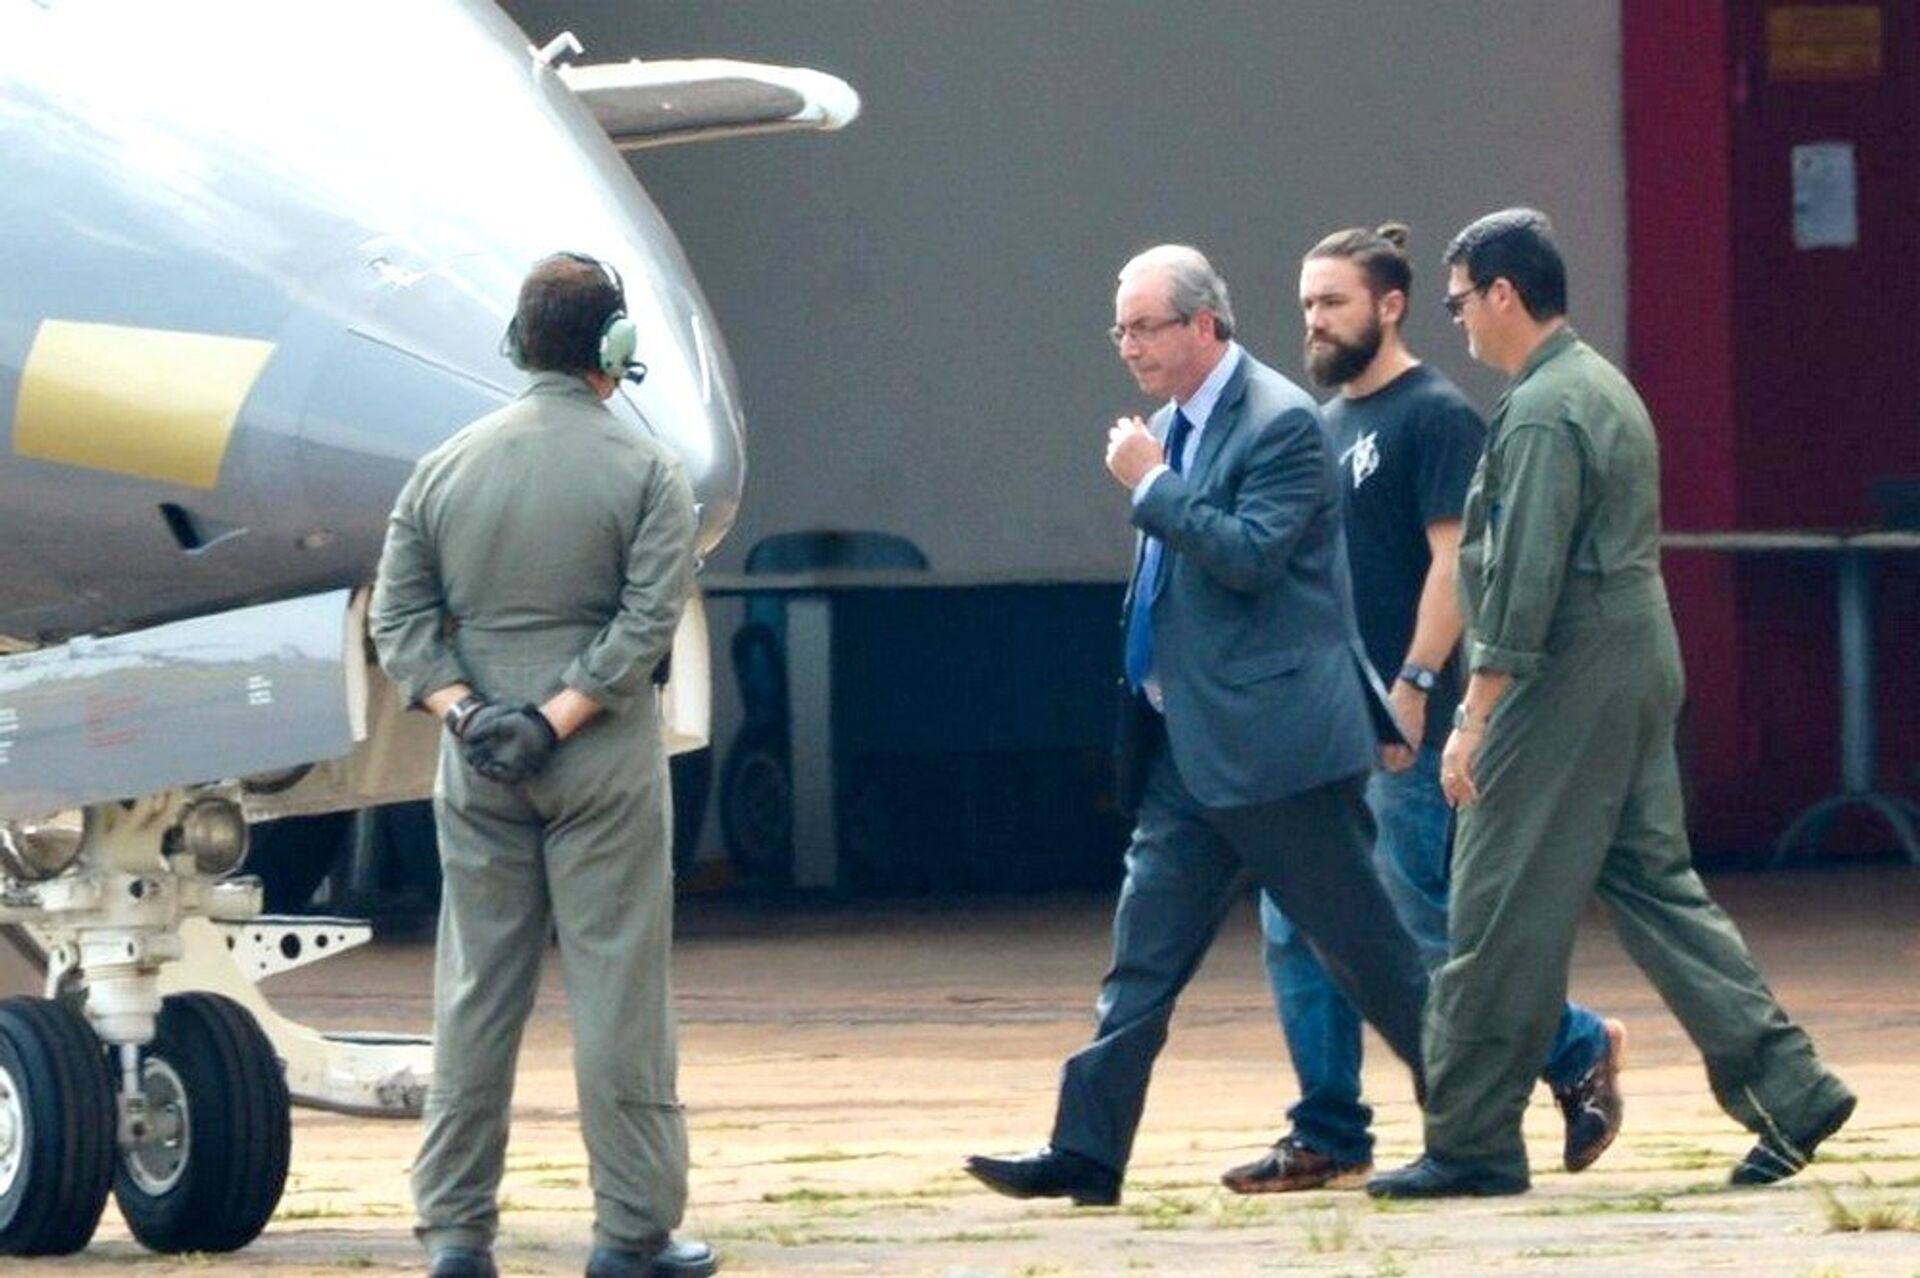 Justiça do Brasil revoga prisão de Eduardo Cunha, mas ex-deputado seguirá detido em casa - Sputnik Brasil, 1920, 28.04.2021